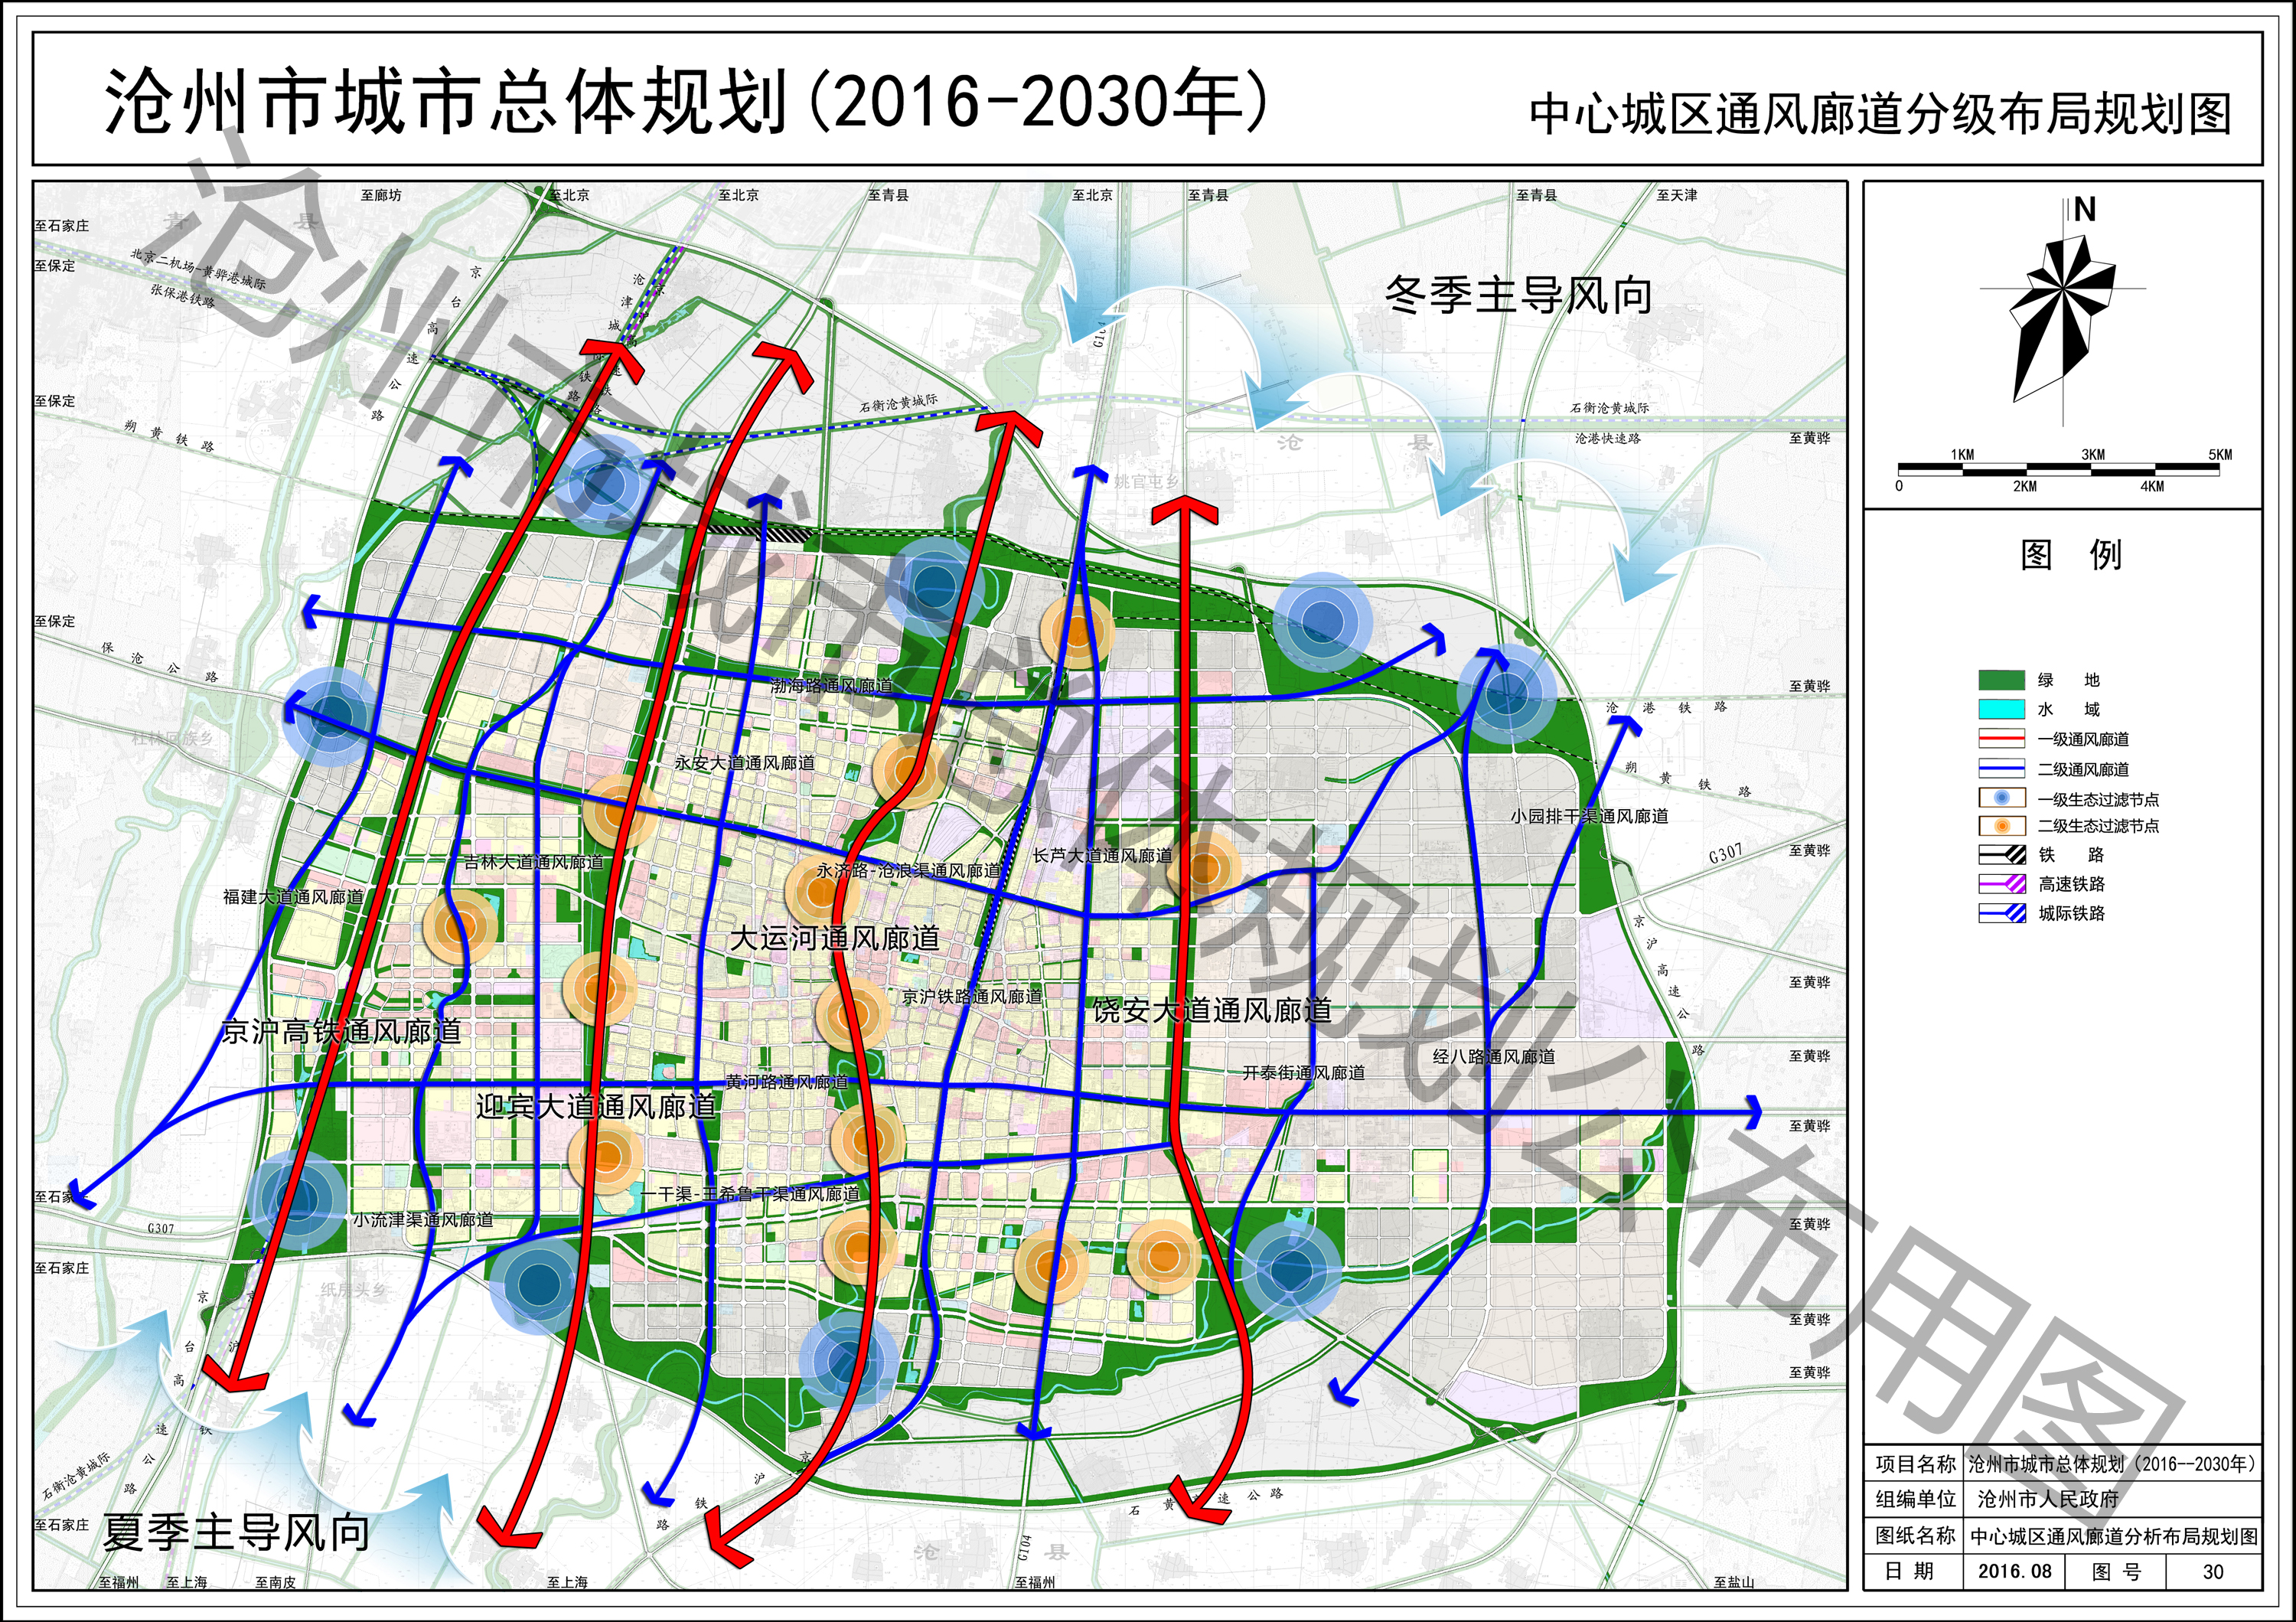 沧州市城市总体规划(2016—2030年) 沧,青,黄,海改区.图片